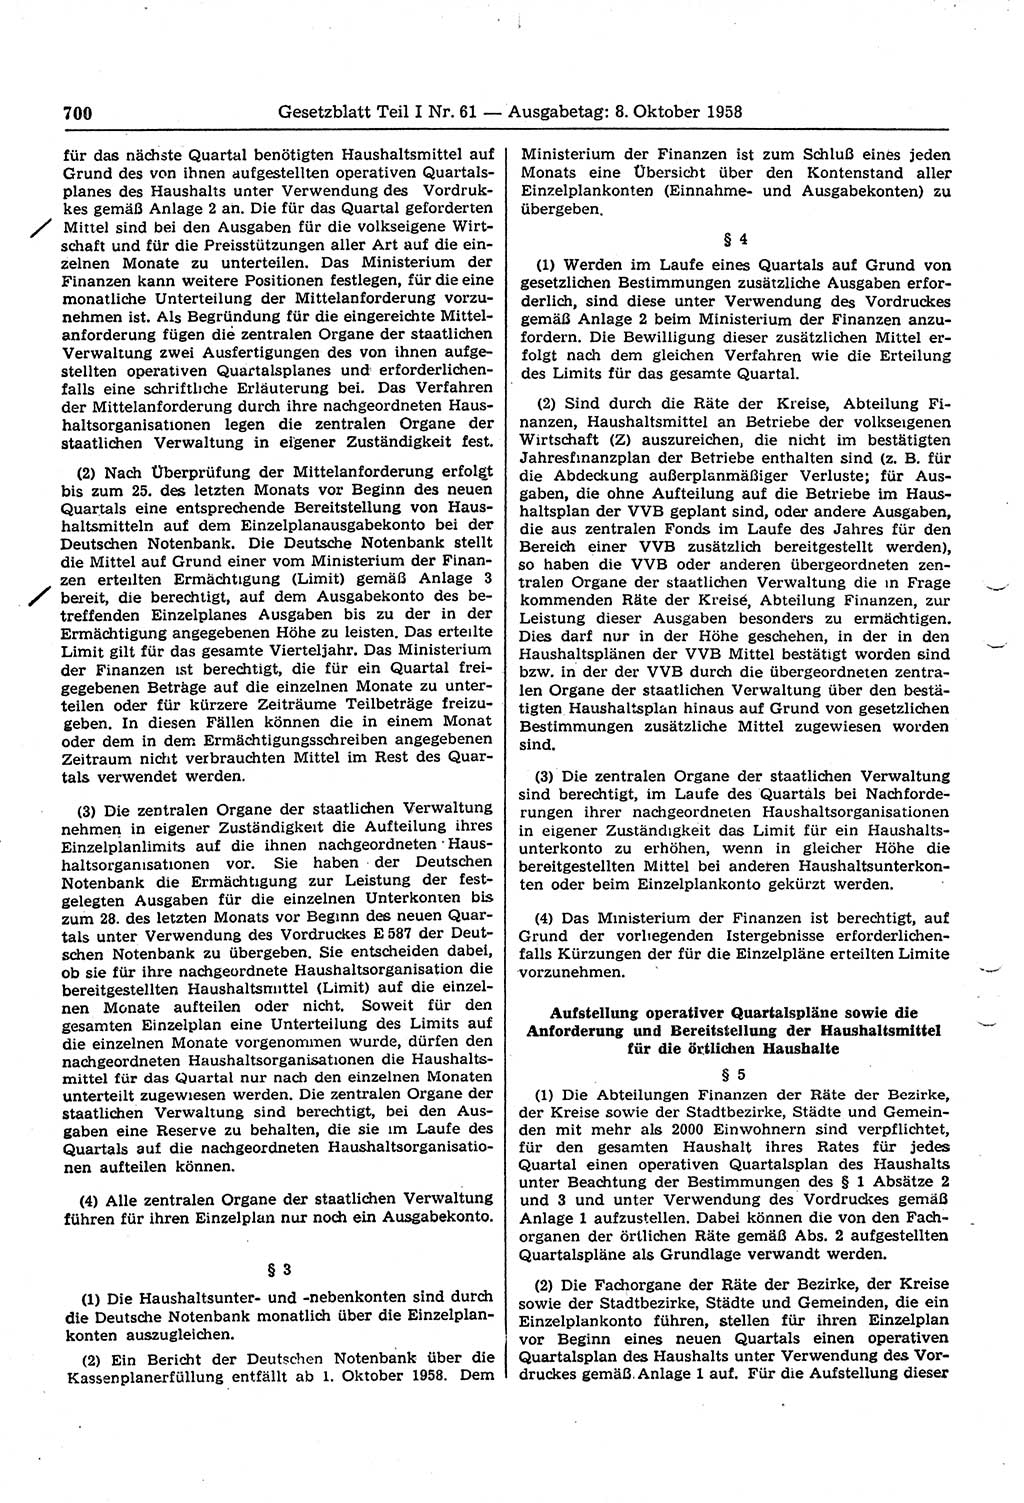 Gesetzblatt (GBl.) der Deutschen Demokratischen Republik (DDR) Teil Ⅰ 1958, Seite 700 (GBl. DDR Ⅰ 1958, S. 700)